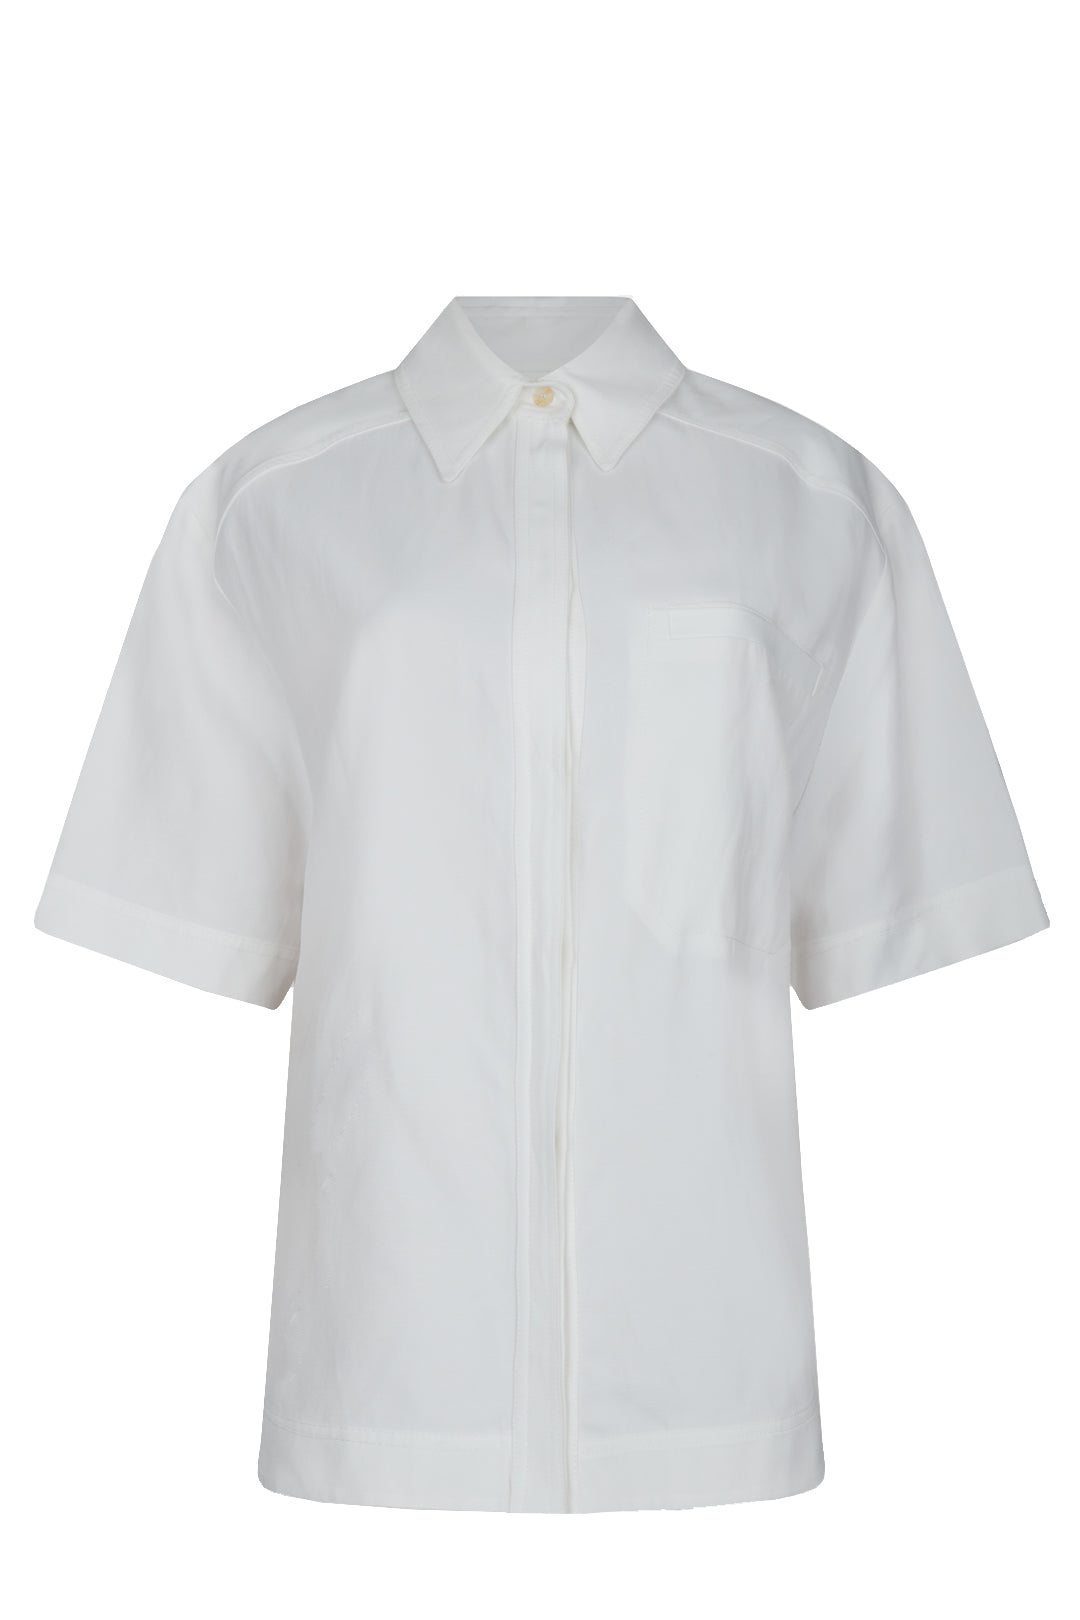 Blanc Linen Short Sleeve Crop Shirt, Ivory, Tops